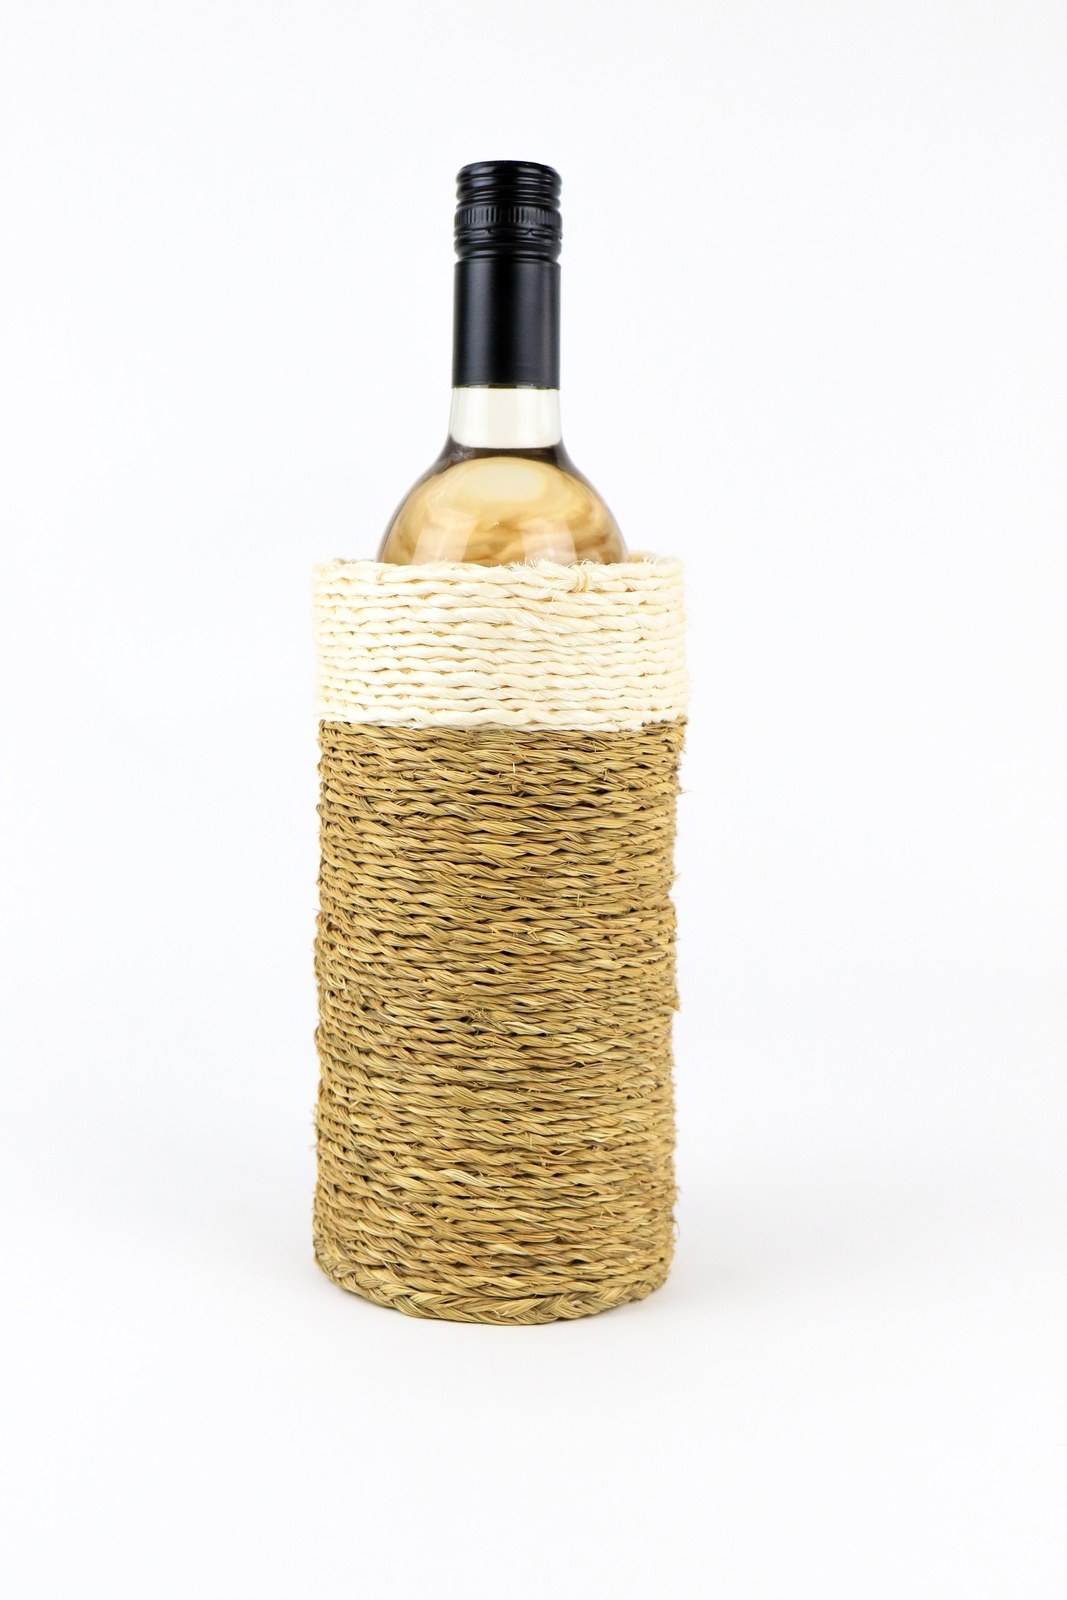 Grass Bottle Holders - Khutsala™ Artisans